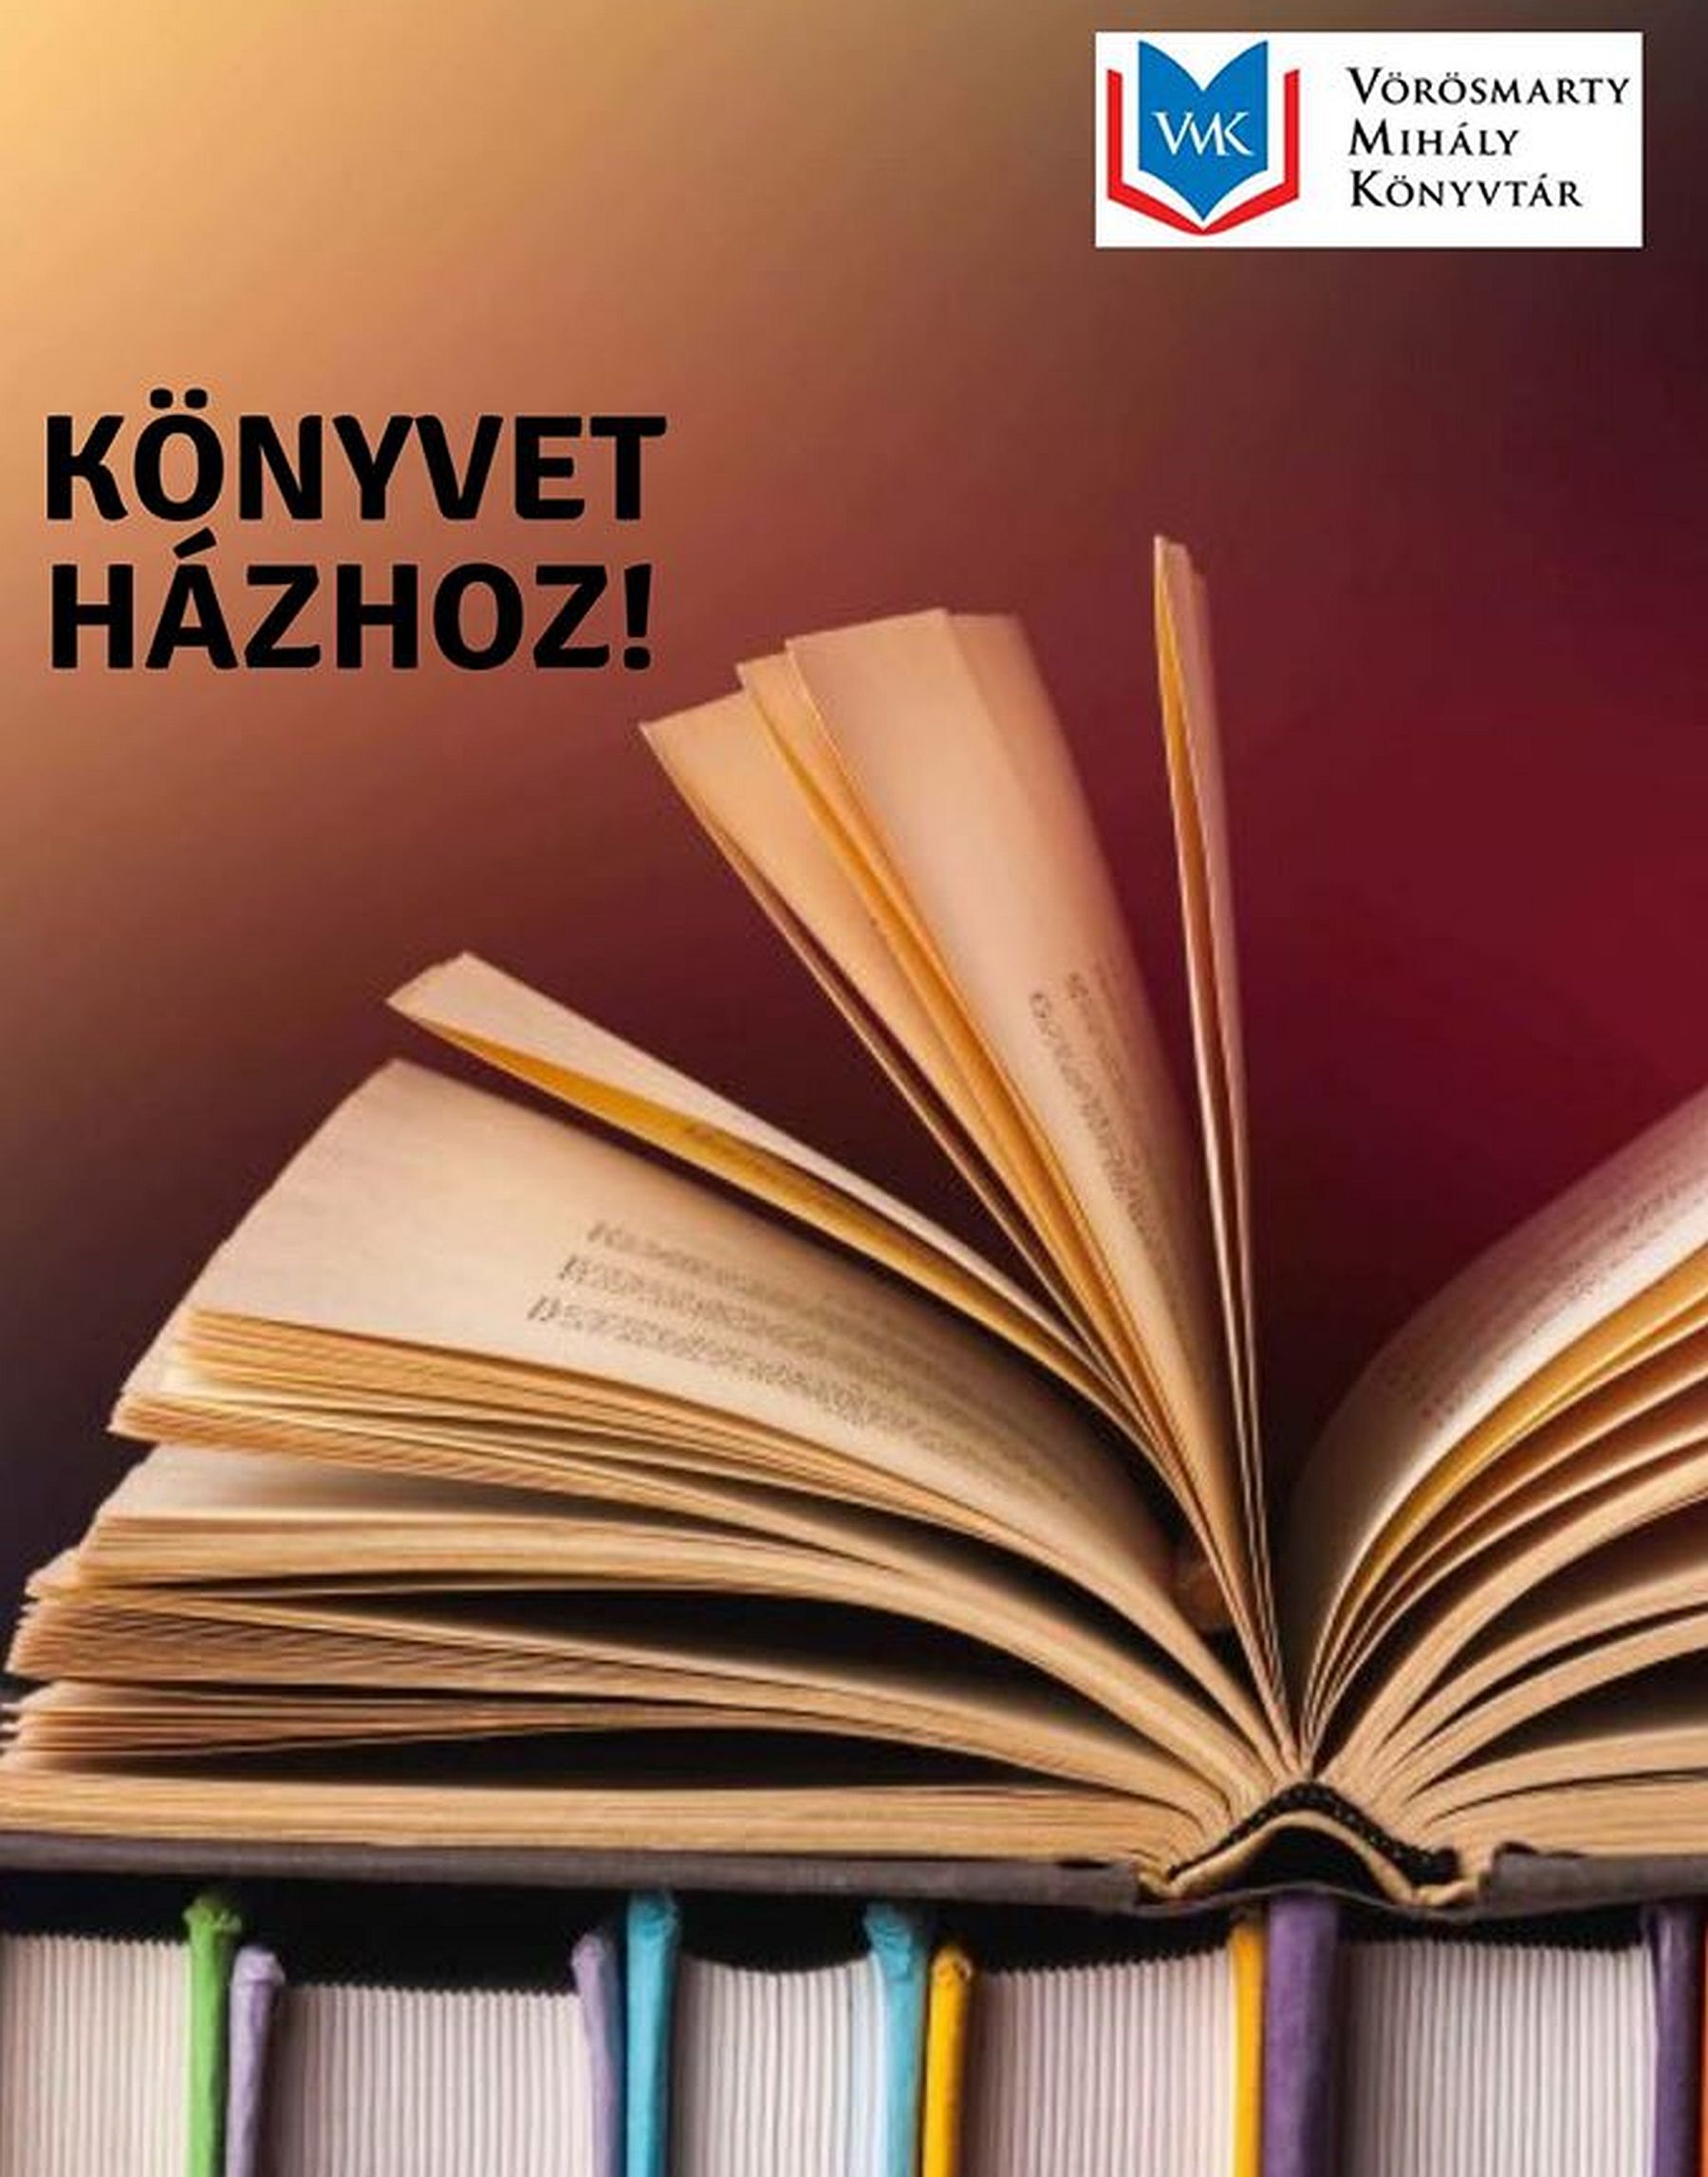 Könyvet házhoz! - új szolgáltatással segít a Vörösmarty Mihály Könyvtár